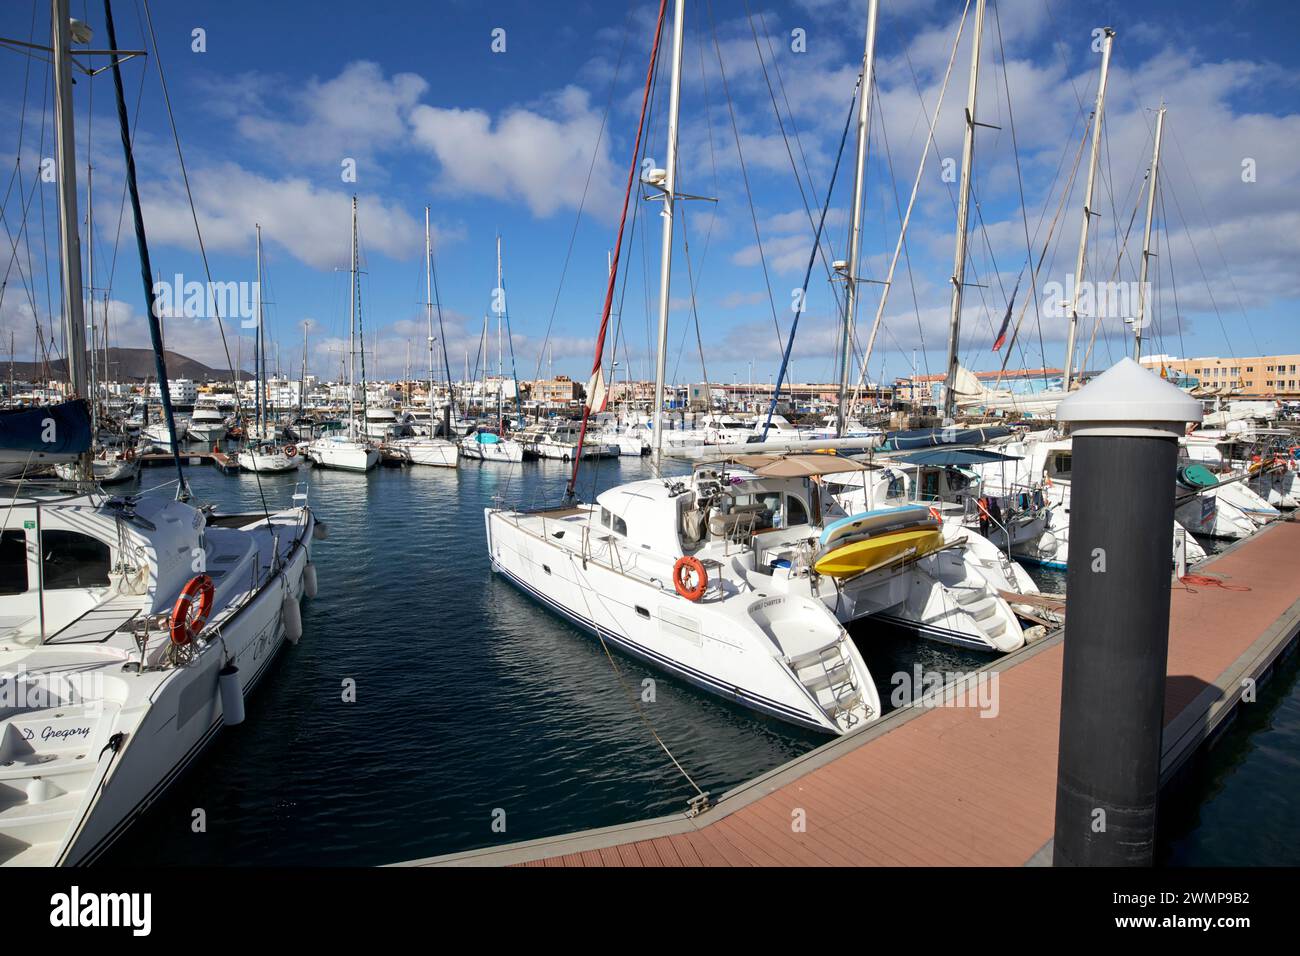 catamarans and yachts in the marina at Corralejo, fuerteventura, Canary Islands, spain Stock Photo